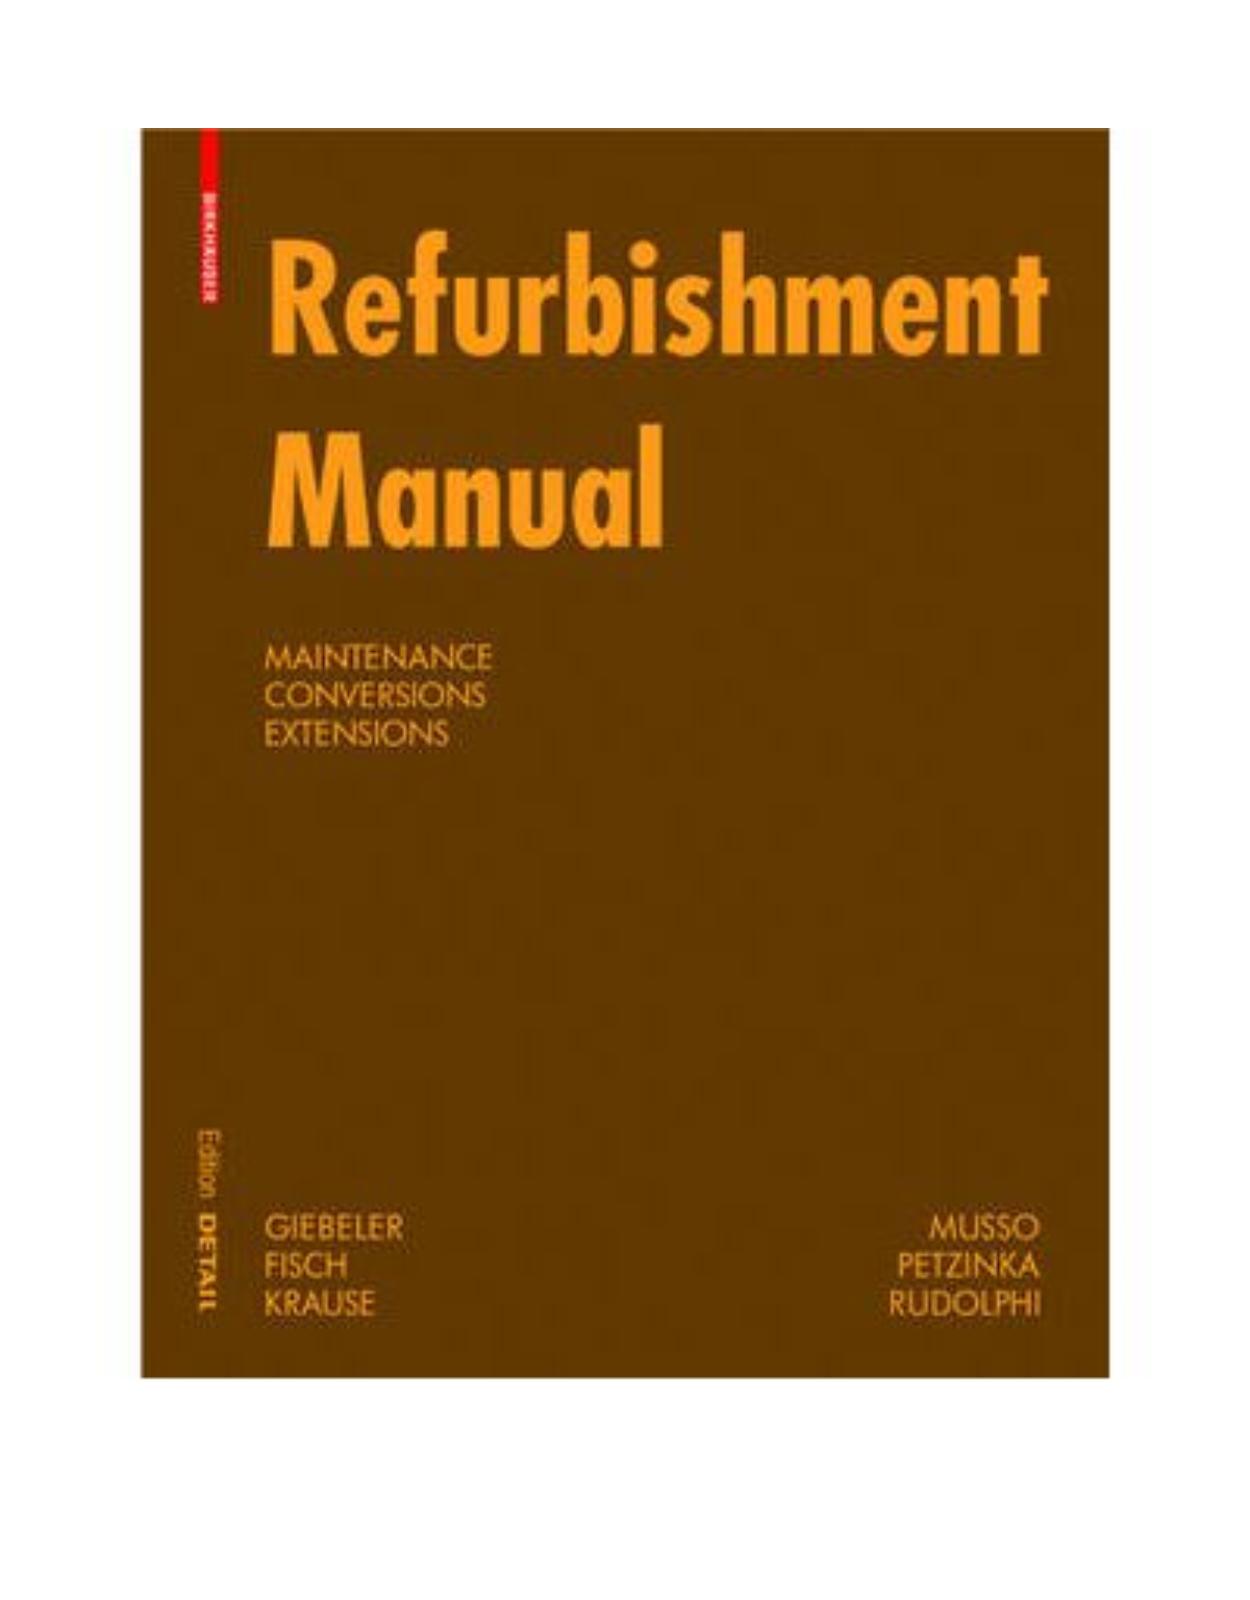 Refurbishment Manual